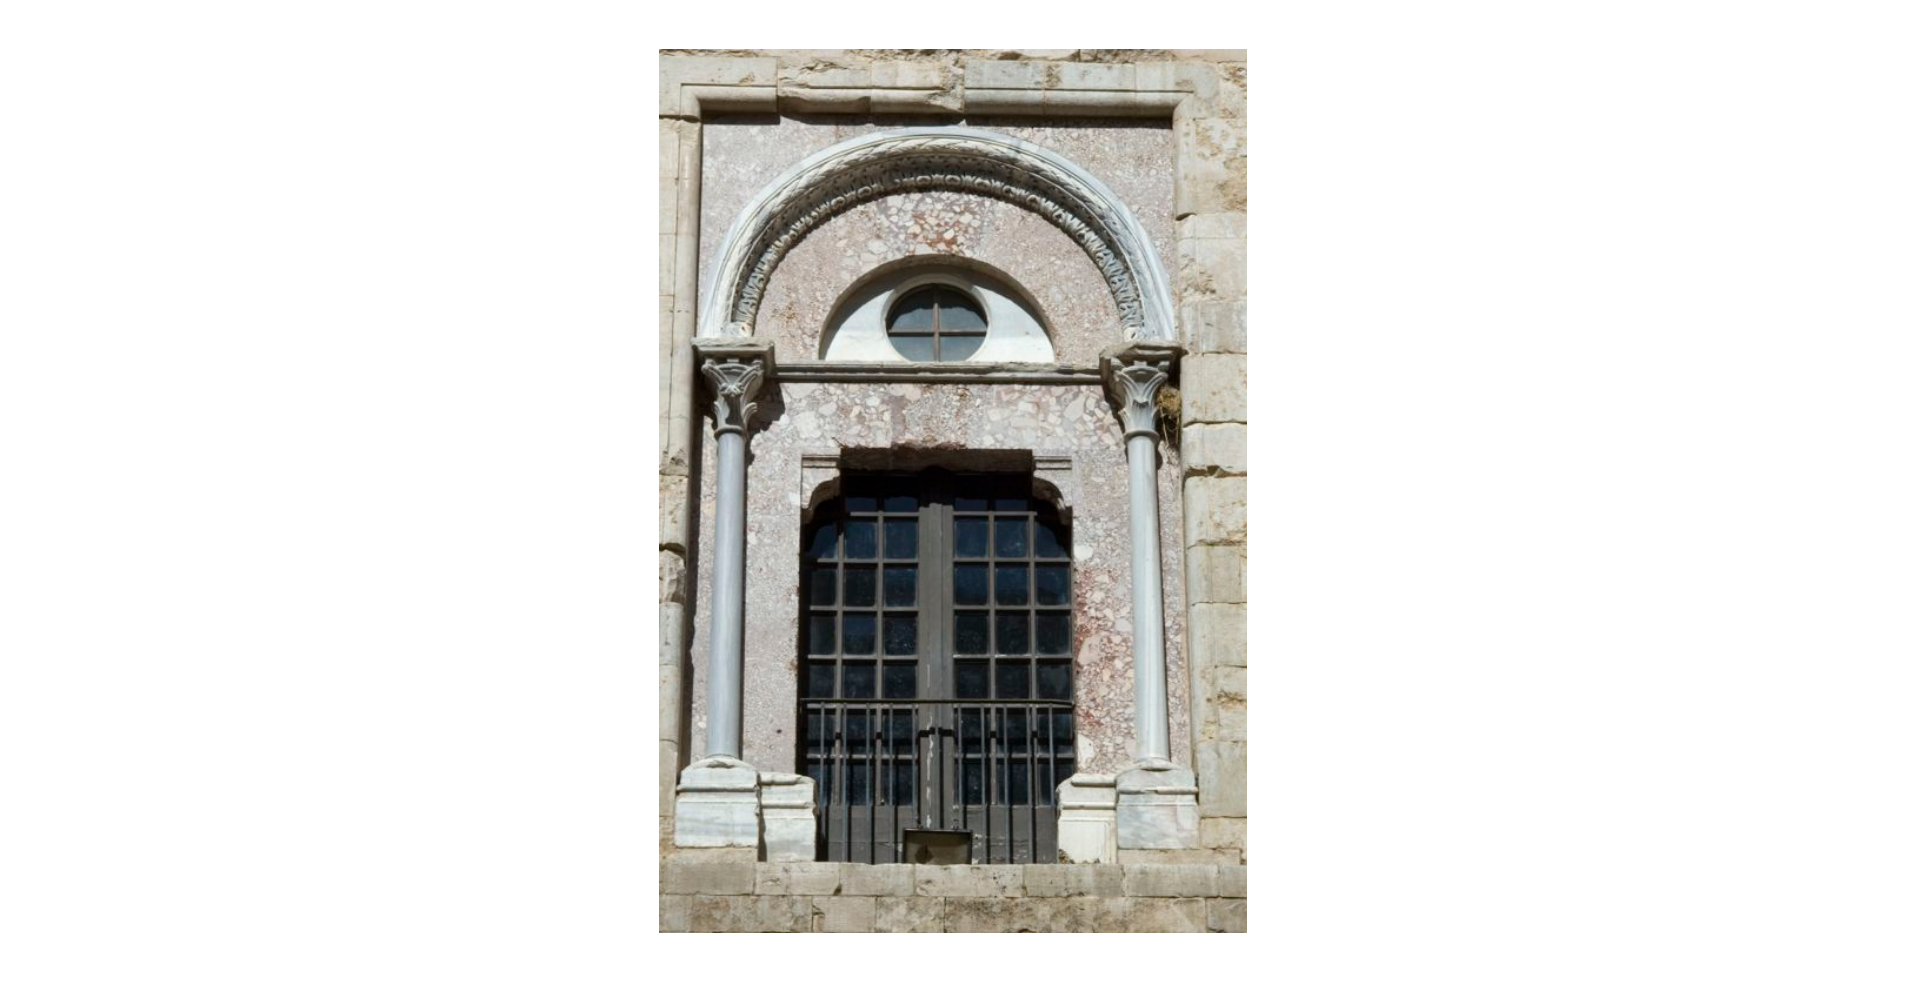 Albino Stocchi - Gerardo Leone, Castel del Monte - pianta ottagonale - finestra situata nella corte interna - Particolare, 2007, fotografia digitale, DGT012365